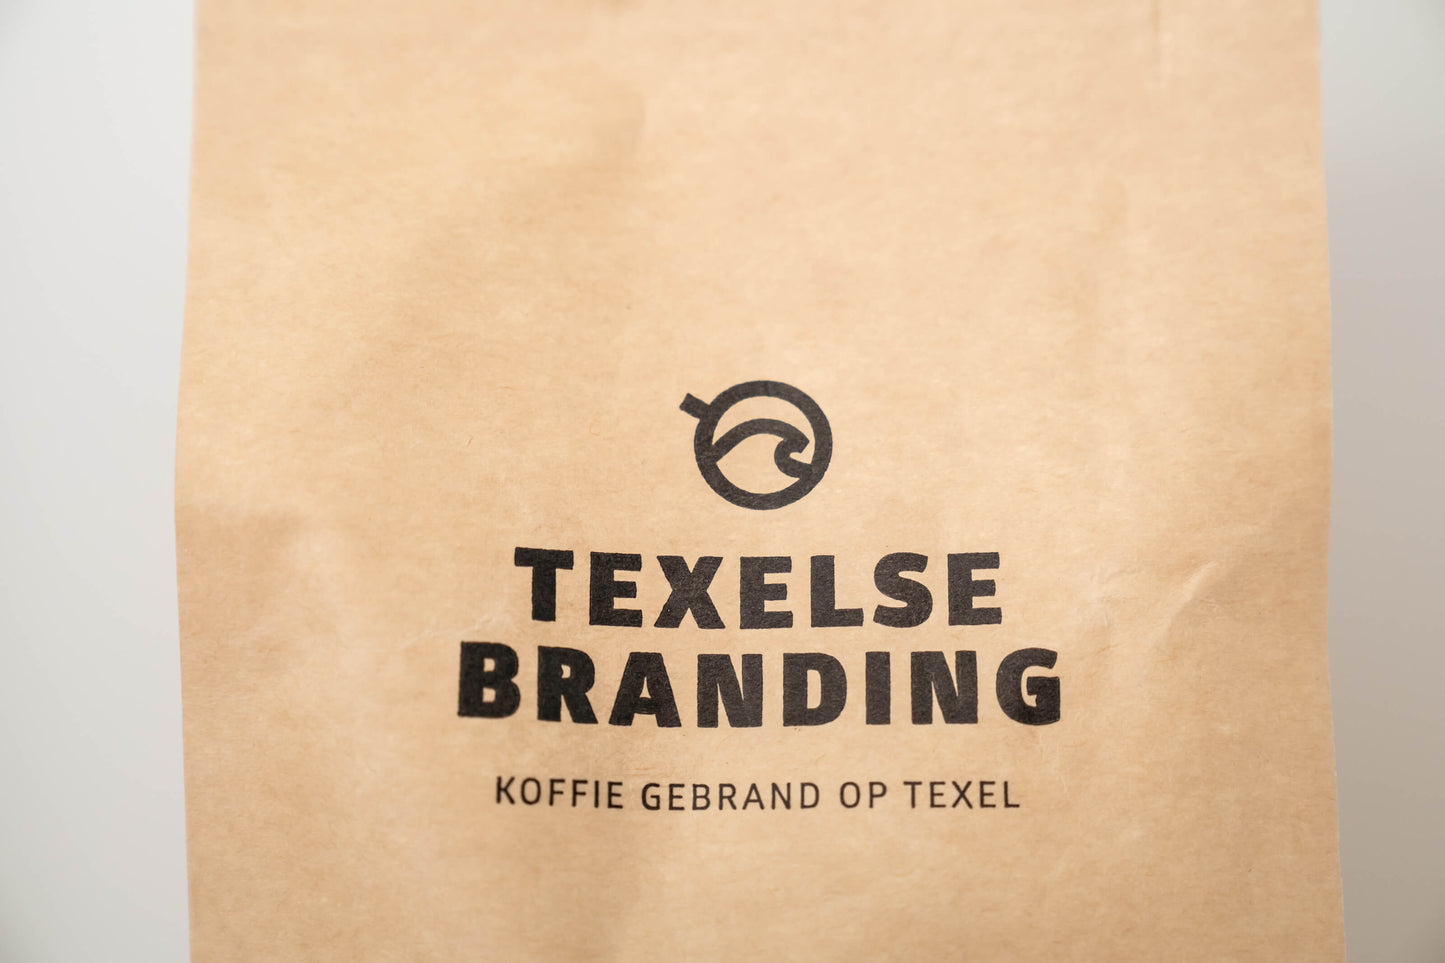 Texel Branding Blend Espresso